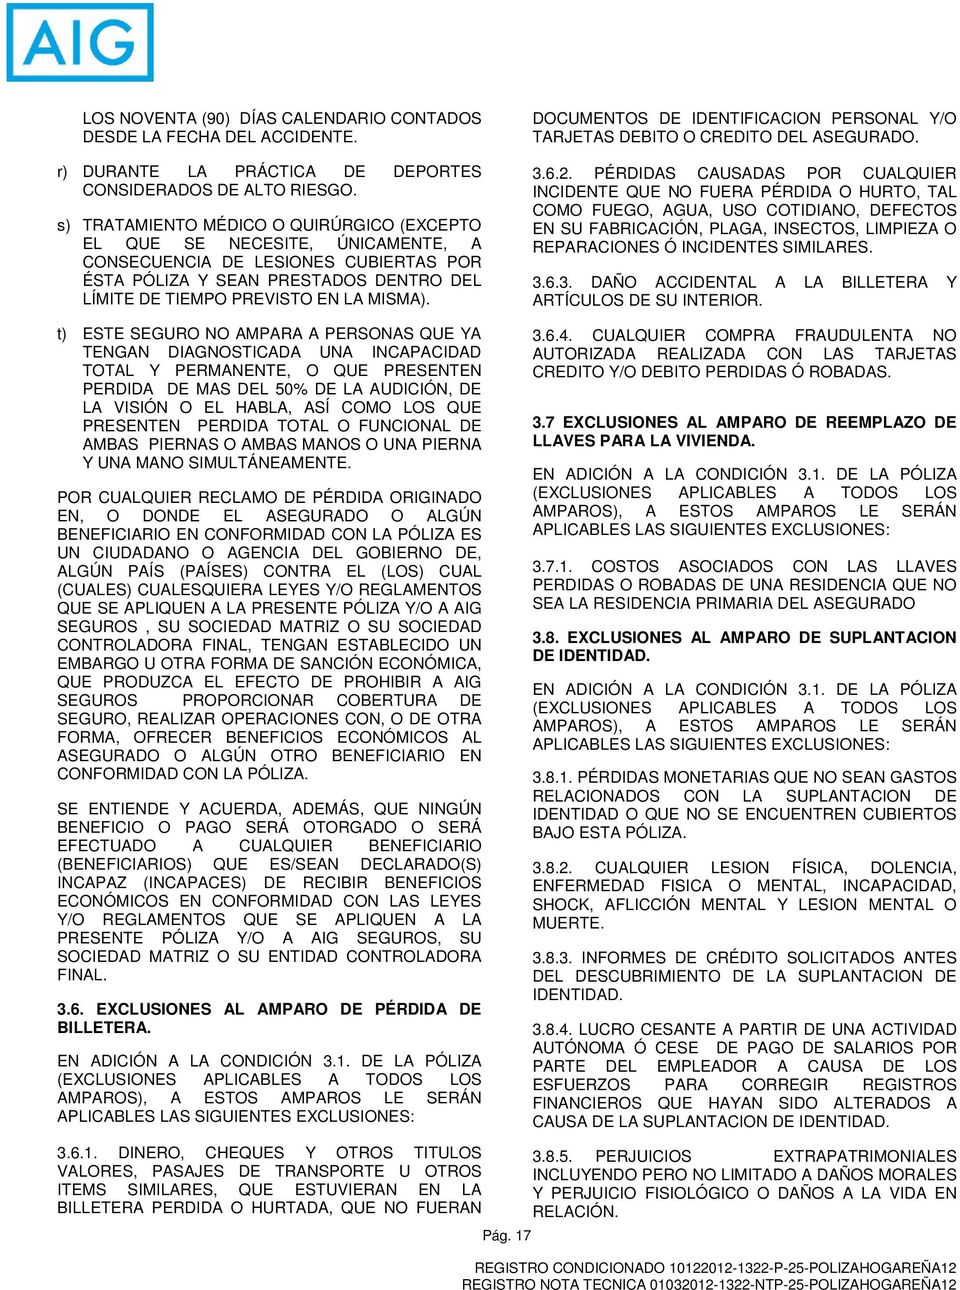 DOCUMENTOS DE IDENTIFICACION PERSONAL Y/O TARJETAS DEBITO O CREDITO DEL ASEGURADO. 3.6.2.